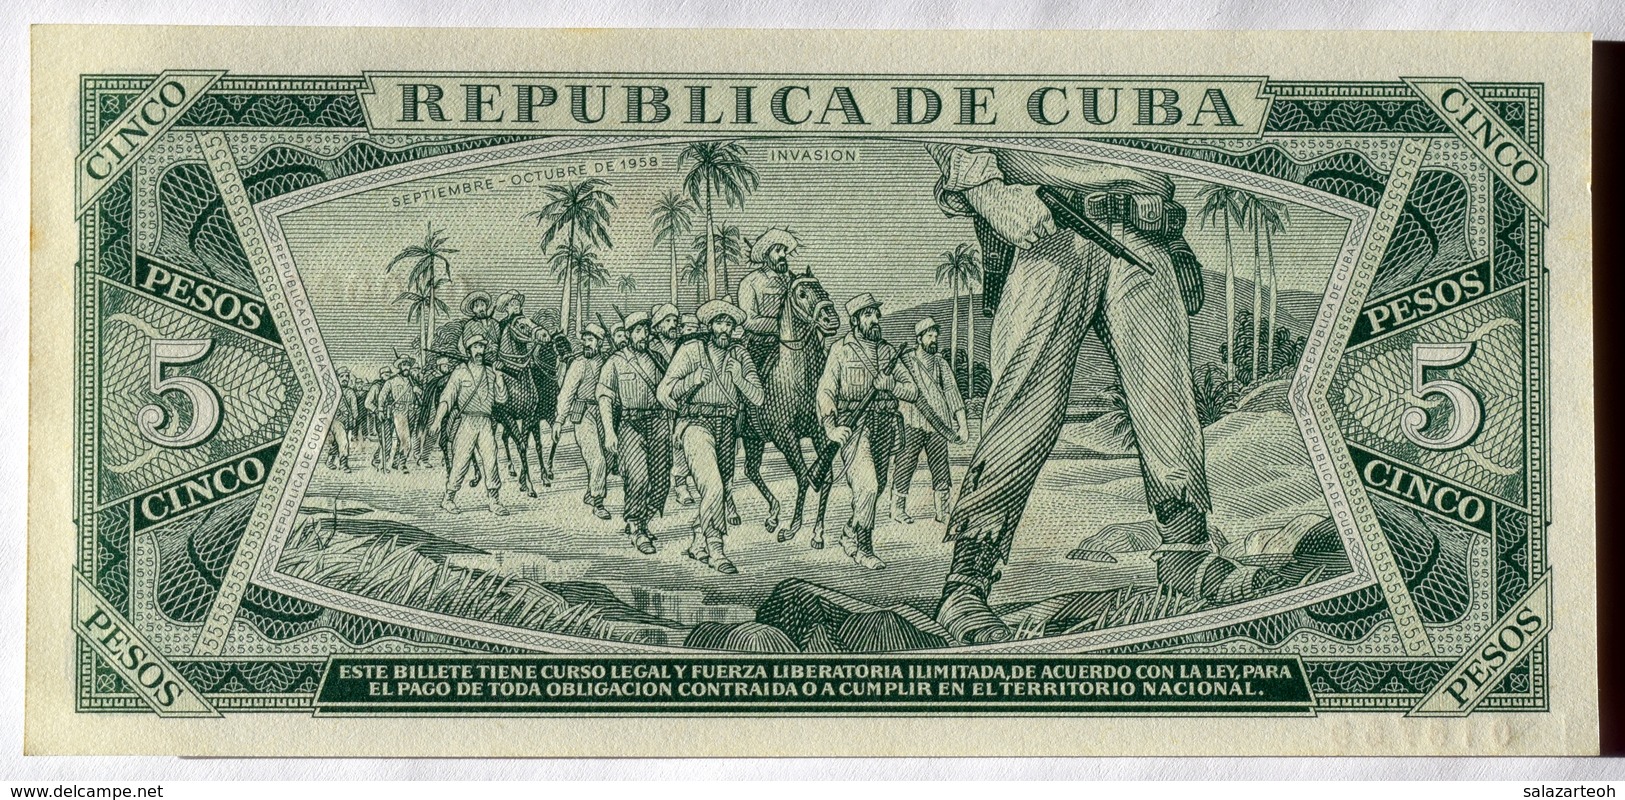 SPECIMEN 1967, Cuba, Billete De CINCO PESOS, Gem-UNC. Primera Decada De La Revolución. - Cuba